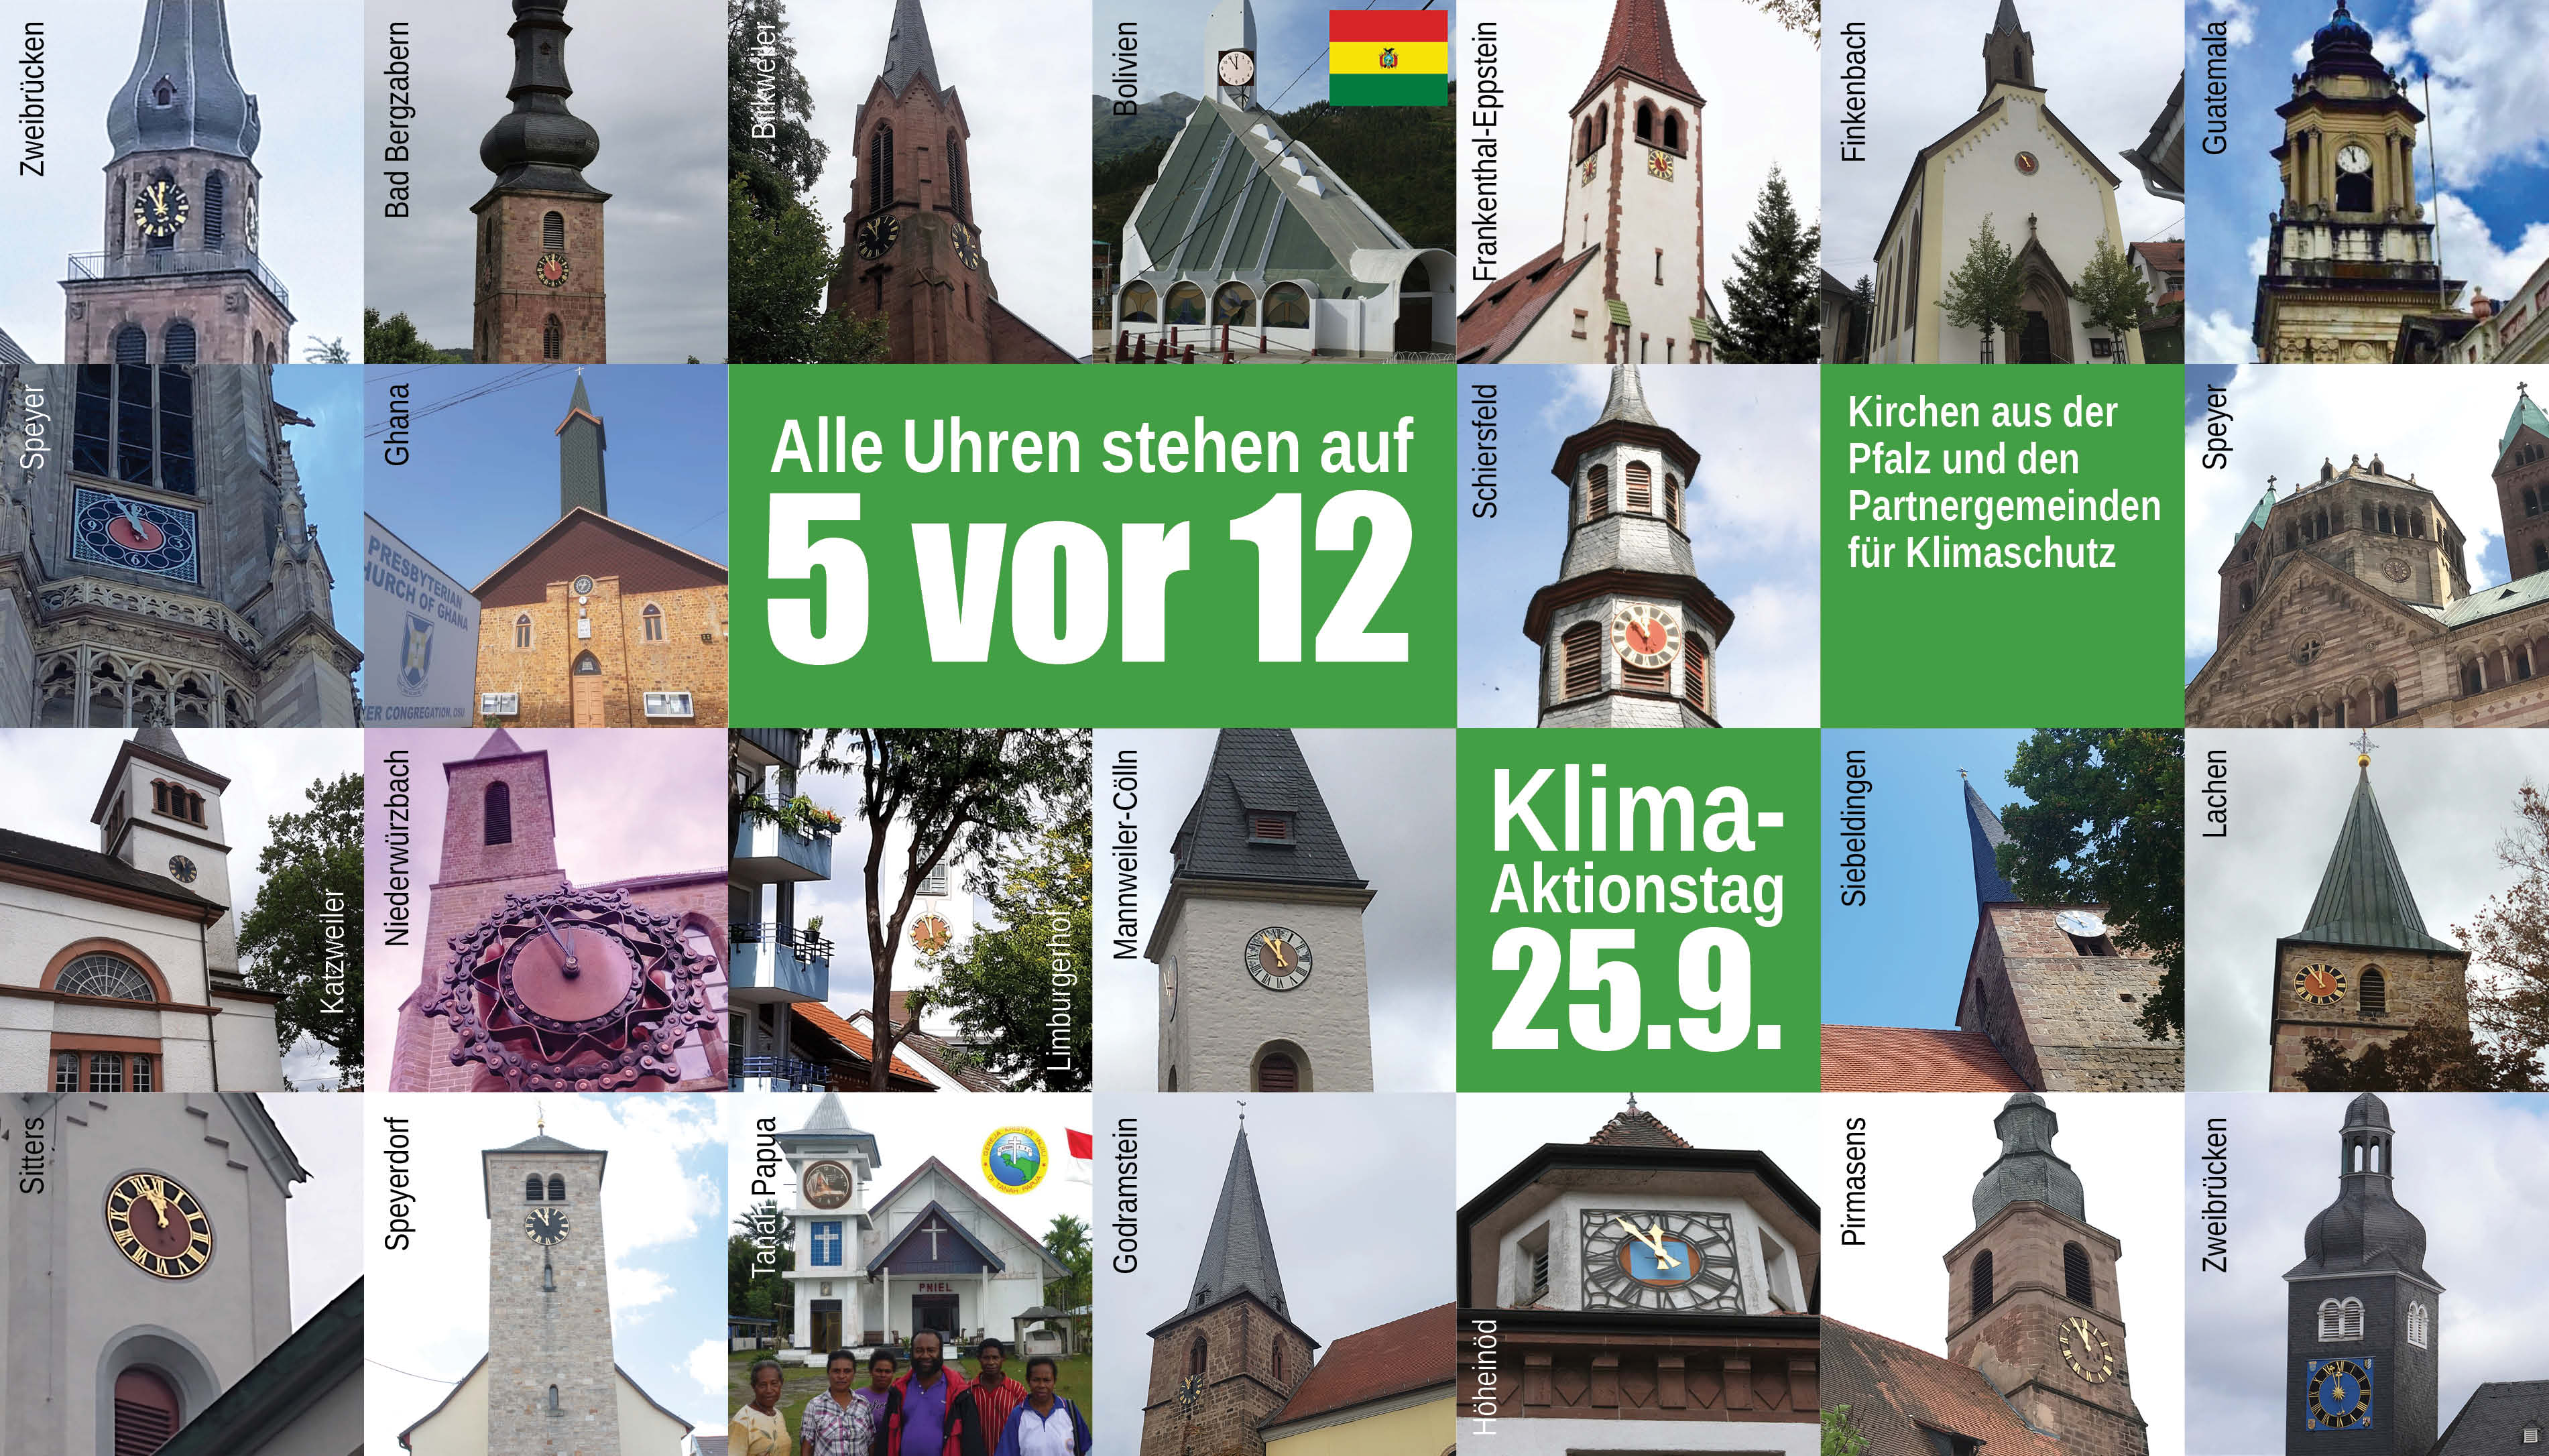 Die Uhr steht auf "5 vor 12": Mit ihren Turmuhren wollen Kirchengemeinden aus Pfalz und Saarpfalz sowie Partnergemeinden Zeichen setzen.